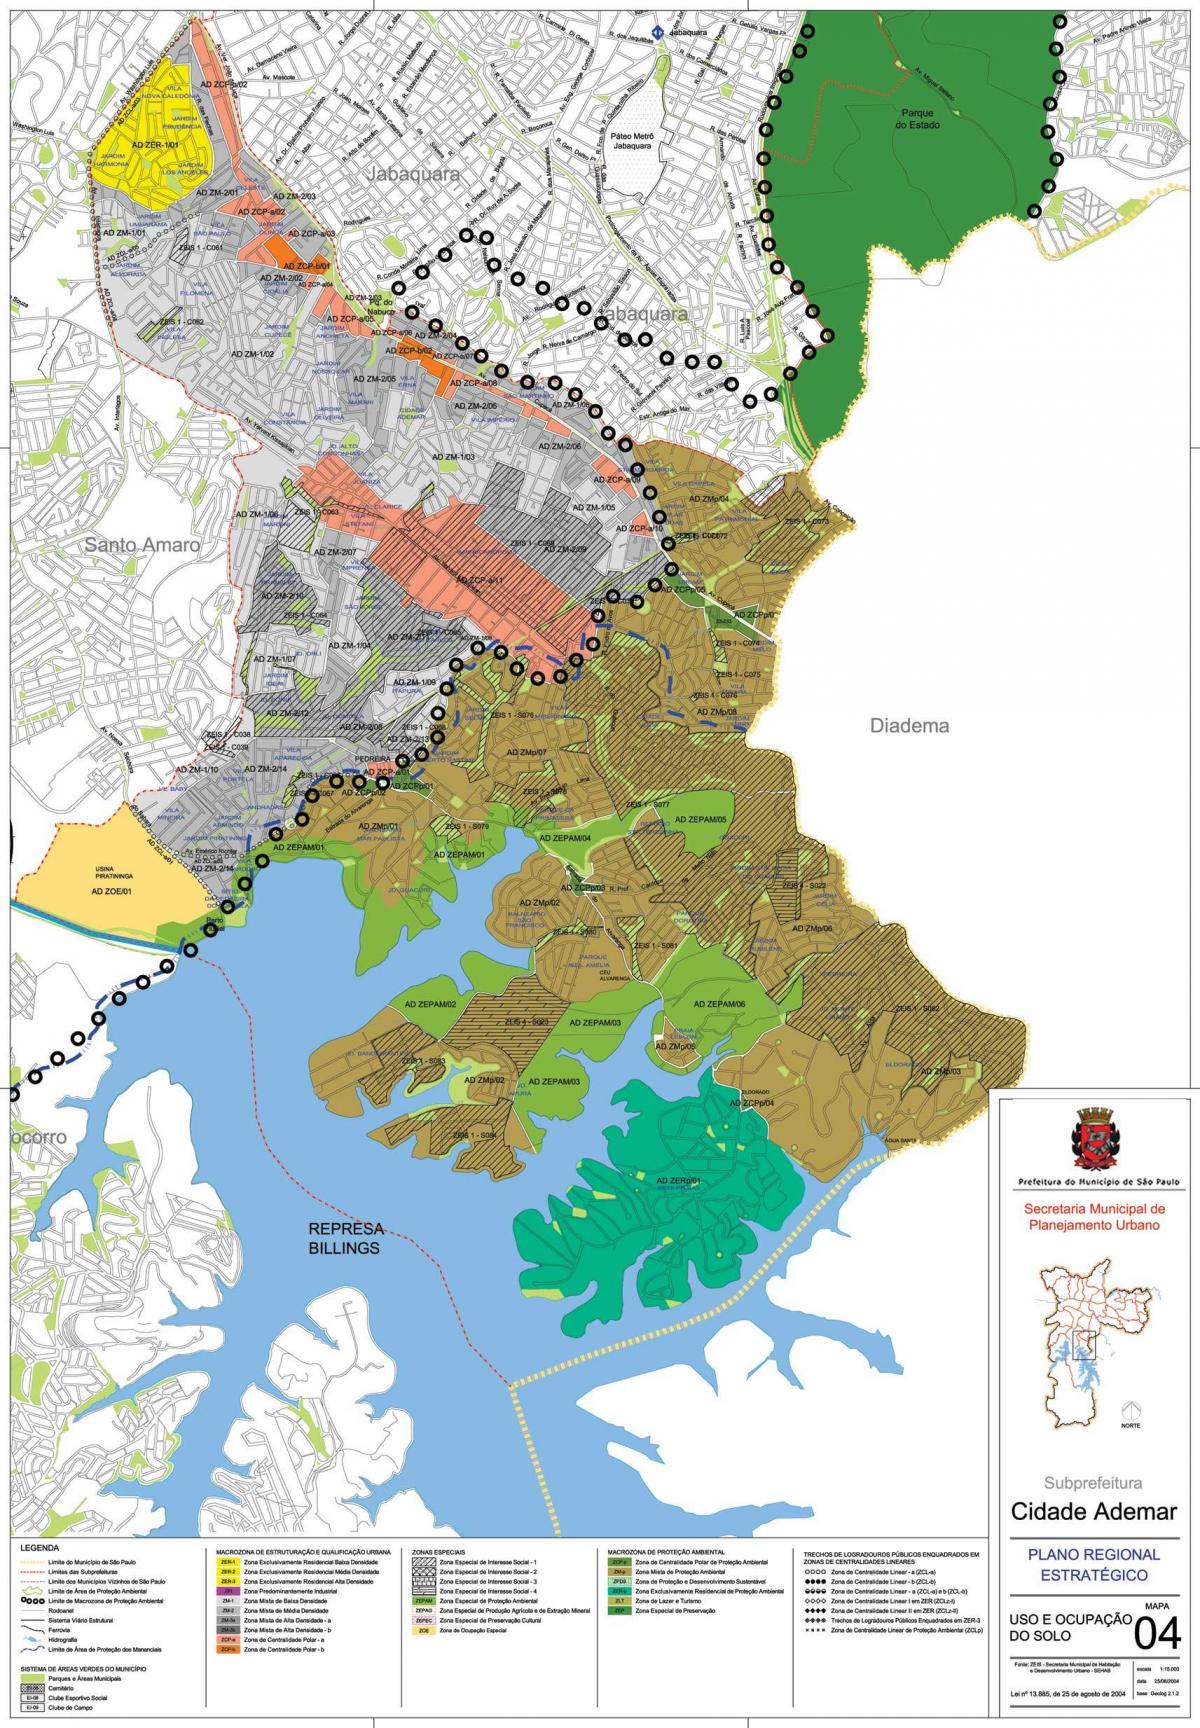 Mapa de Cidade Ademar São Paulo - Ocupação do solo